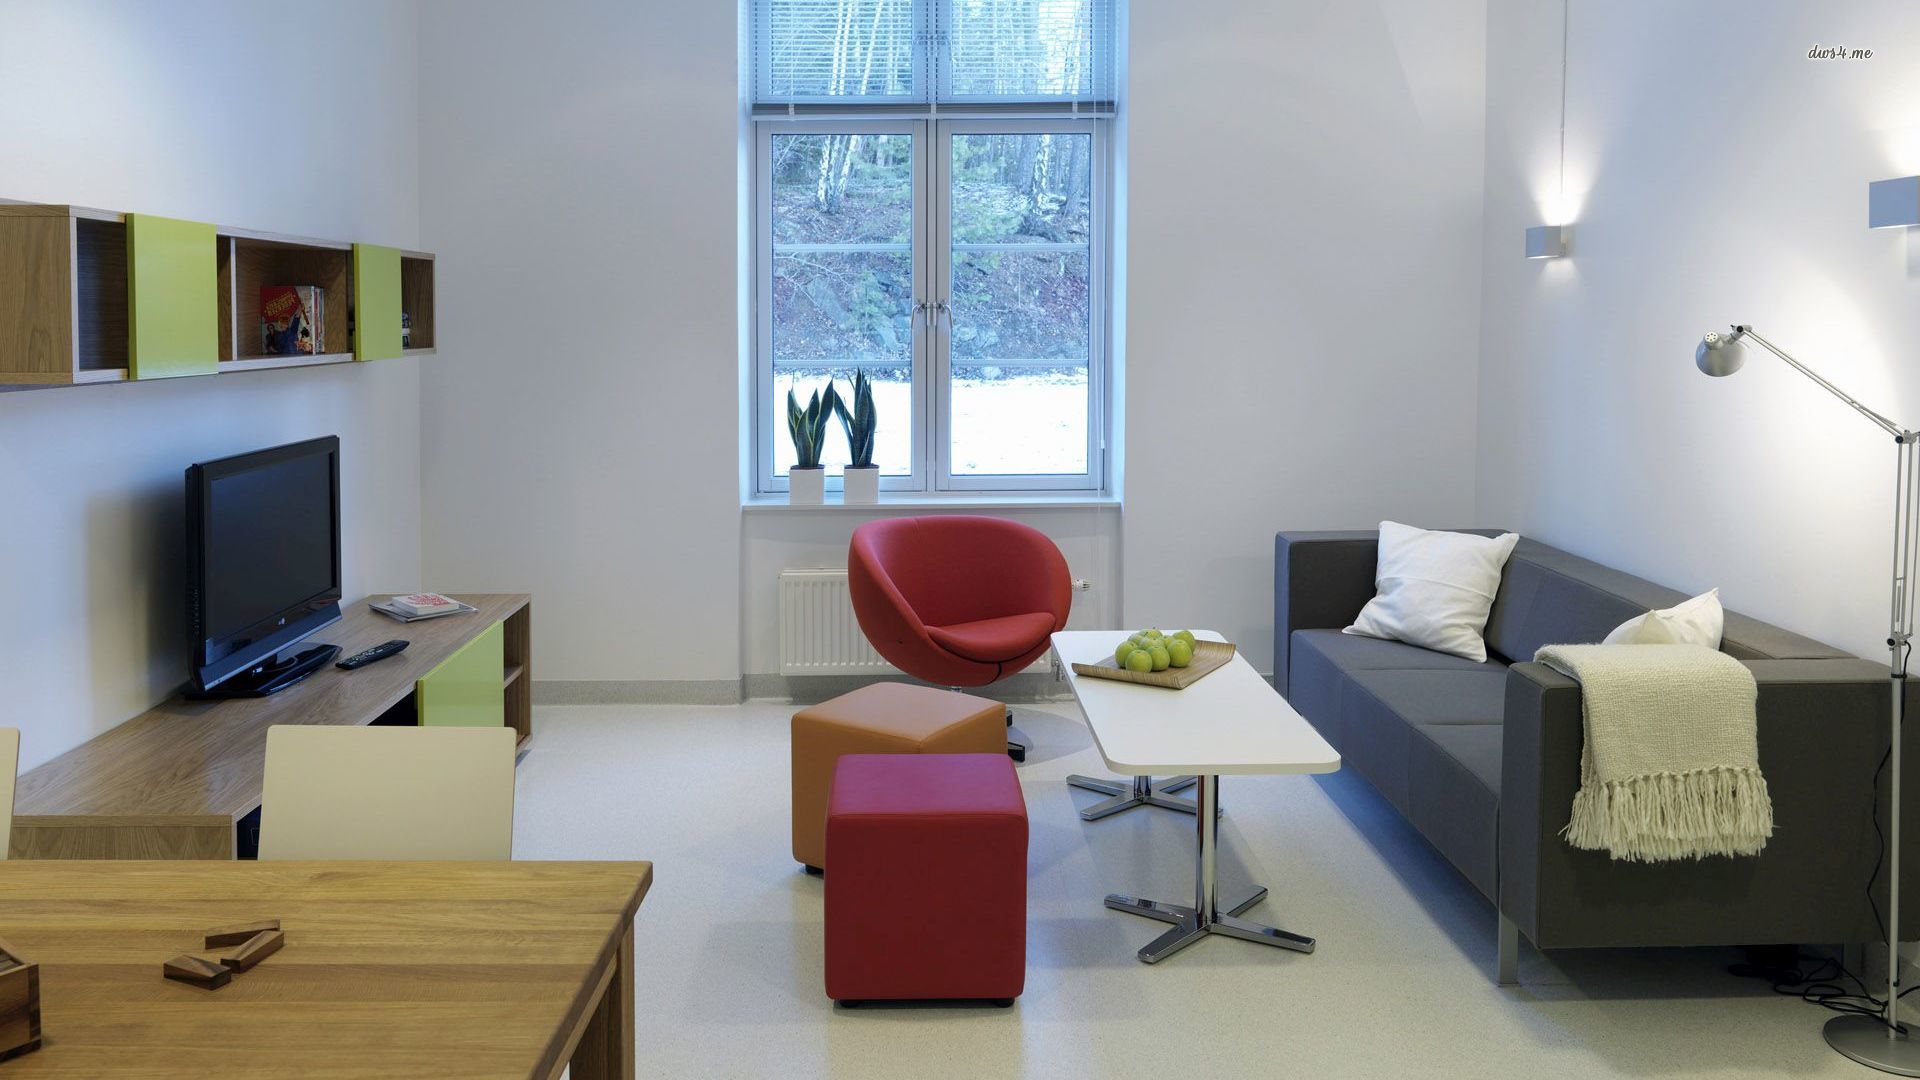 L'idée d'un salon moderne dans le style du minimalisme